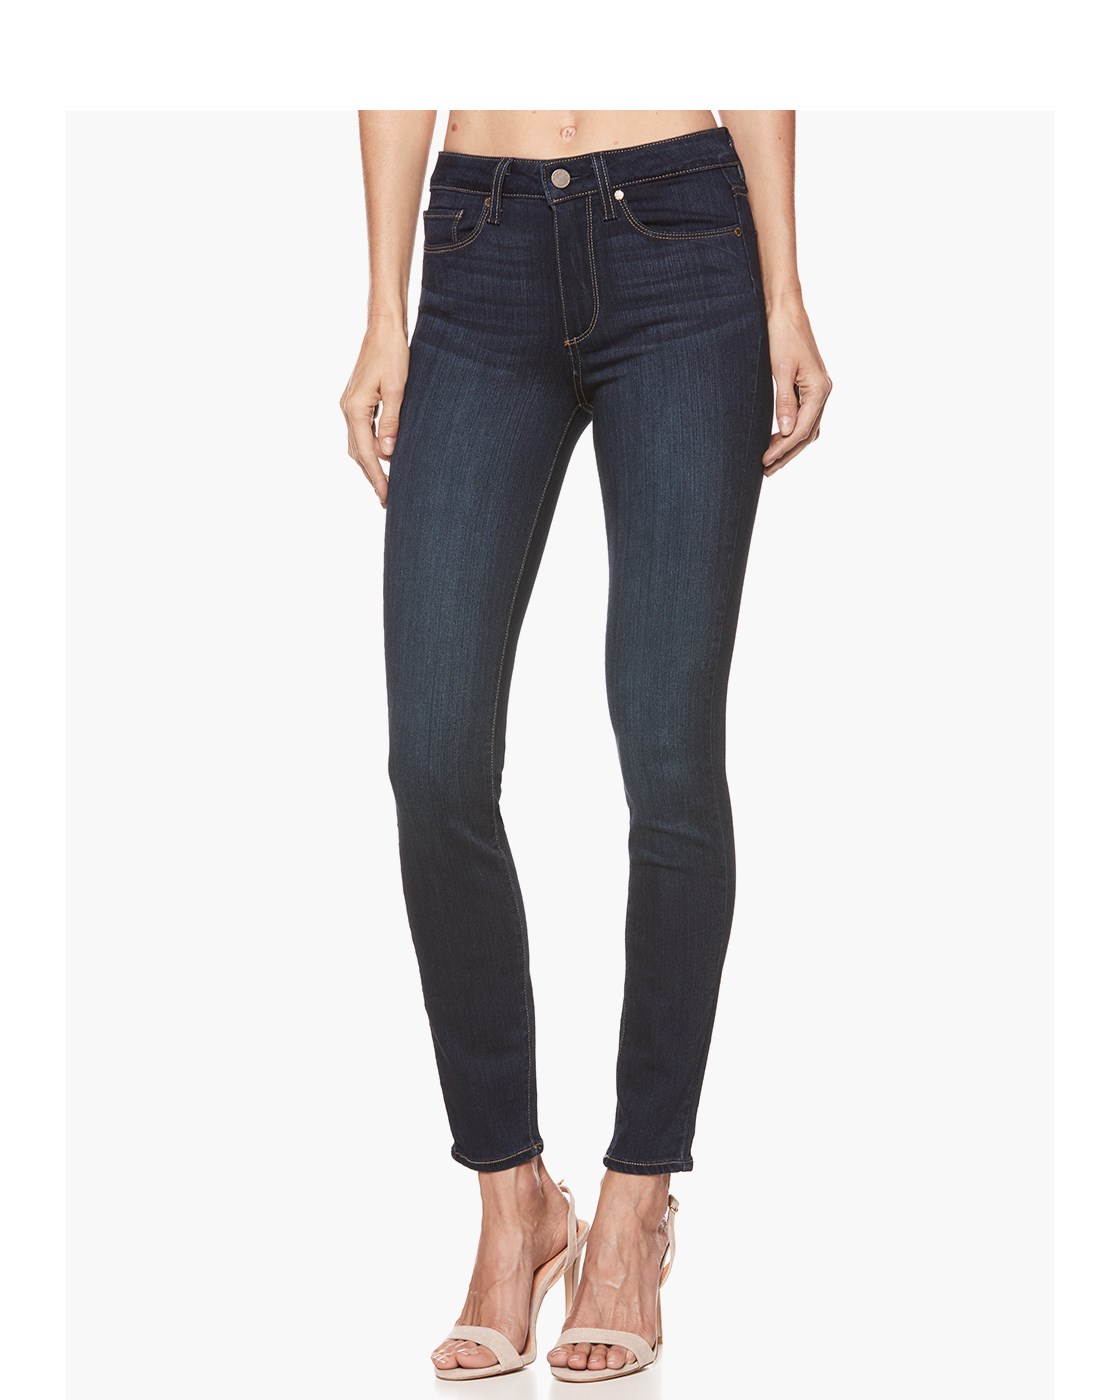 Paige Hoxton Ankle - Hartmann Jeans, $243